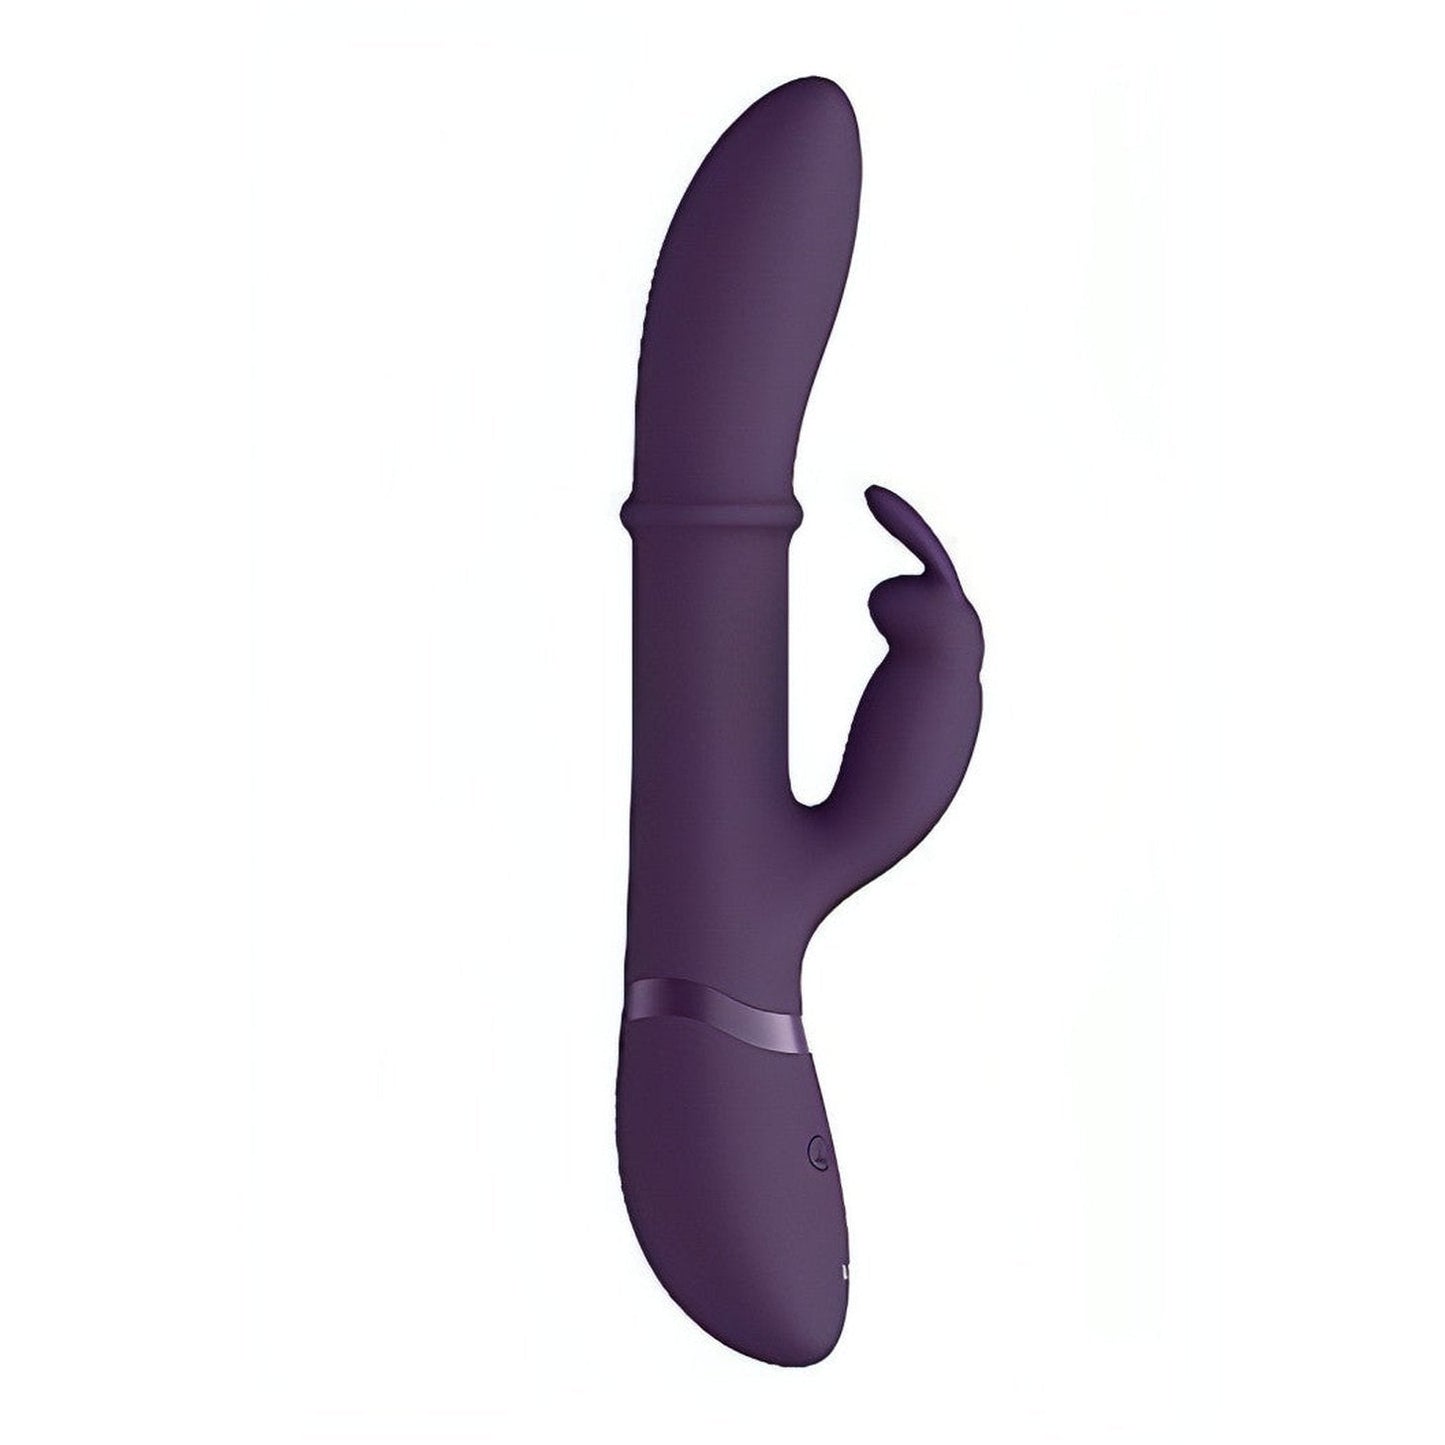 Vibratore Rabbit con anello Up & Down per un stimolazione extra delle pareti vaginali - Prugna Vive